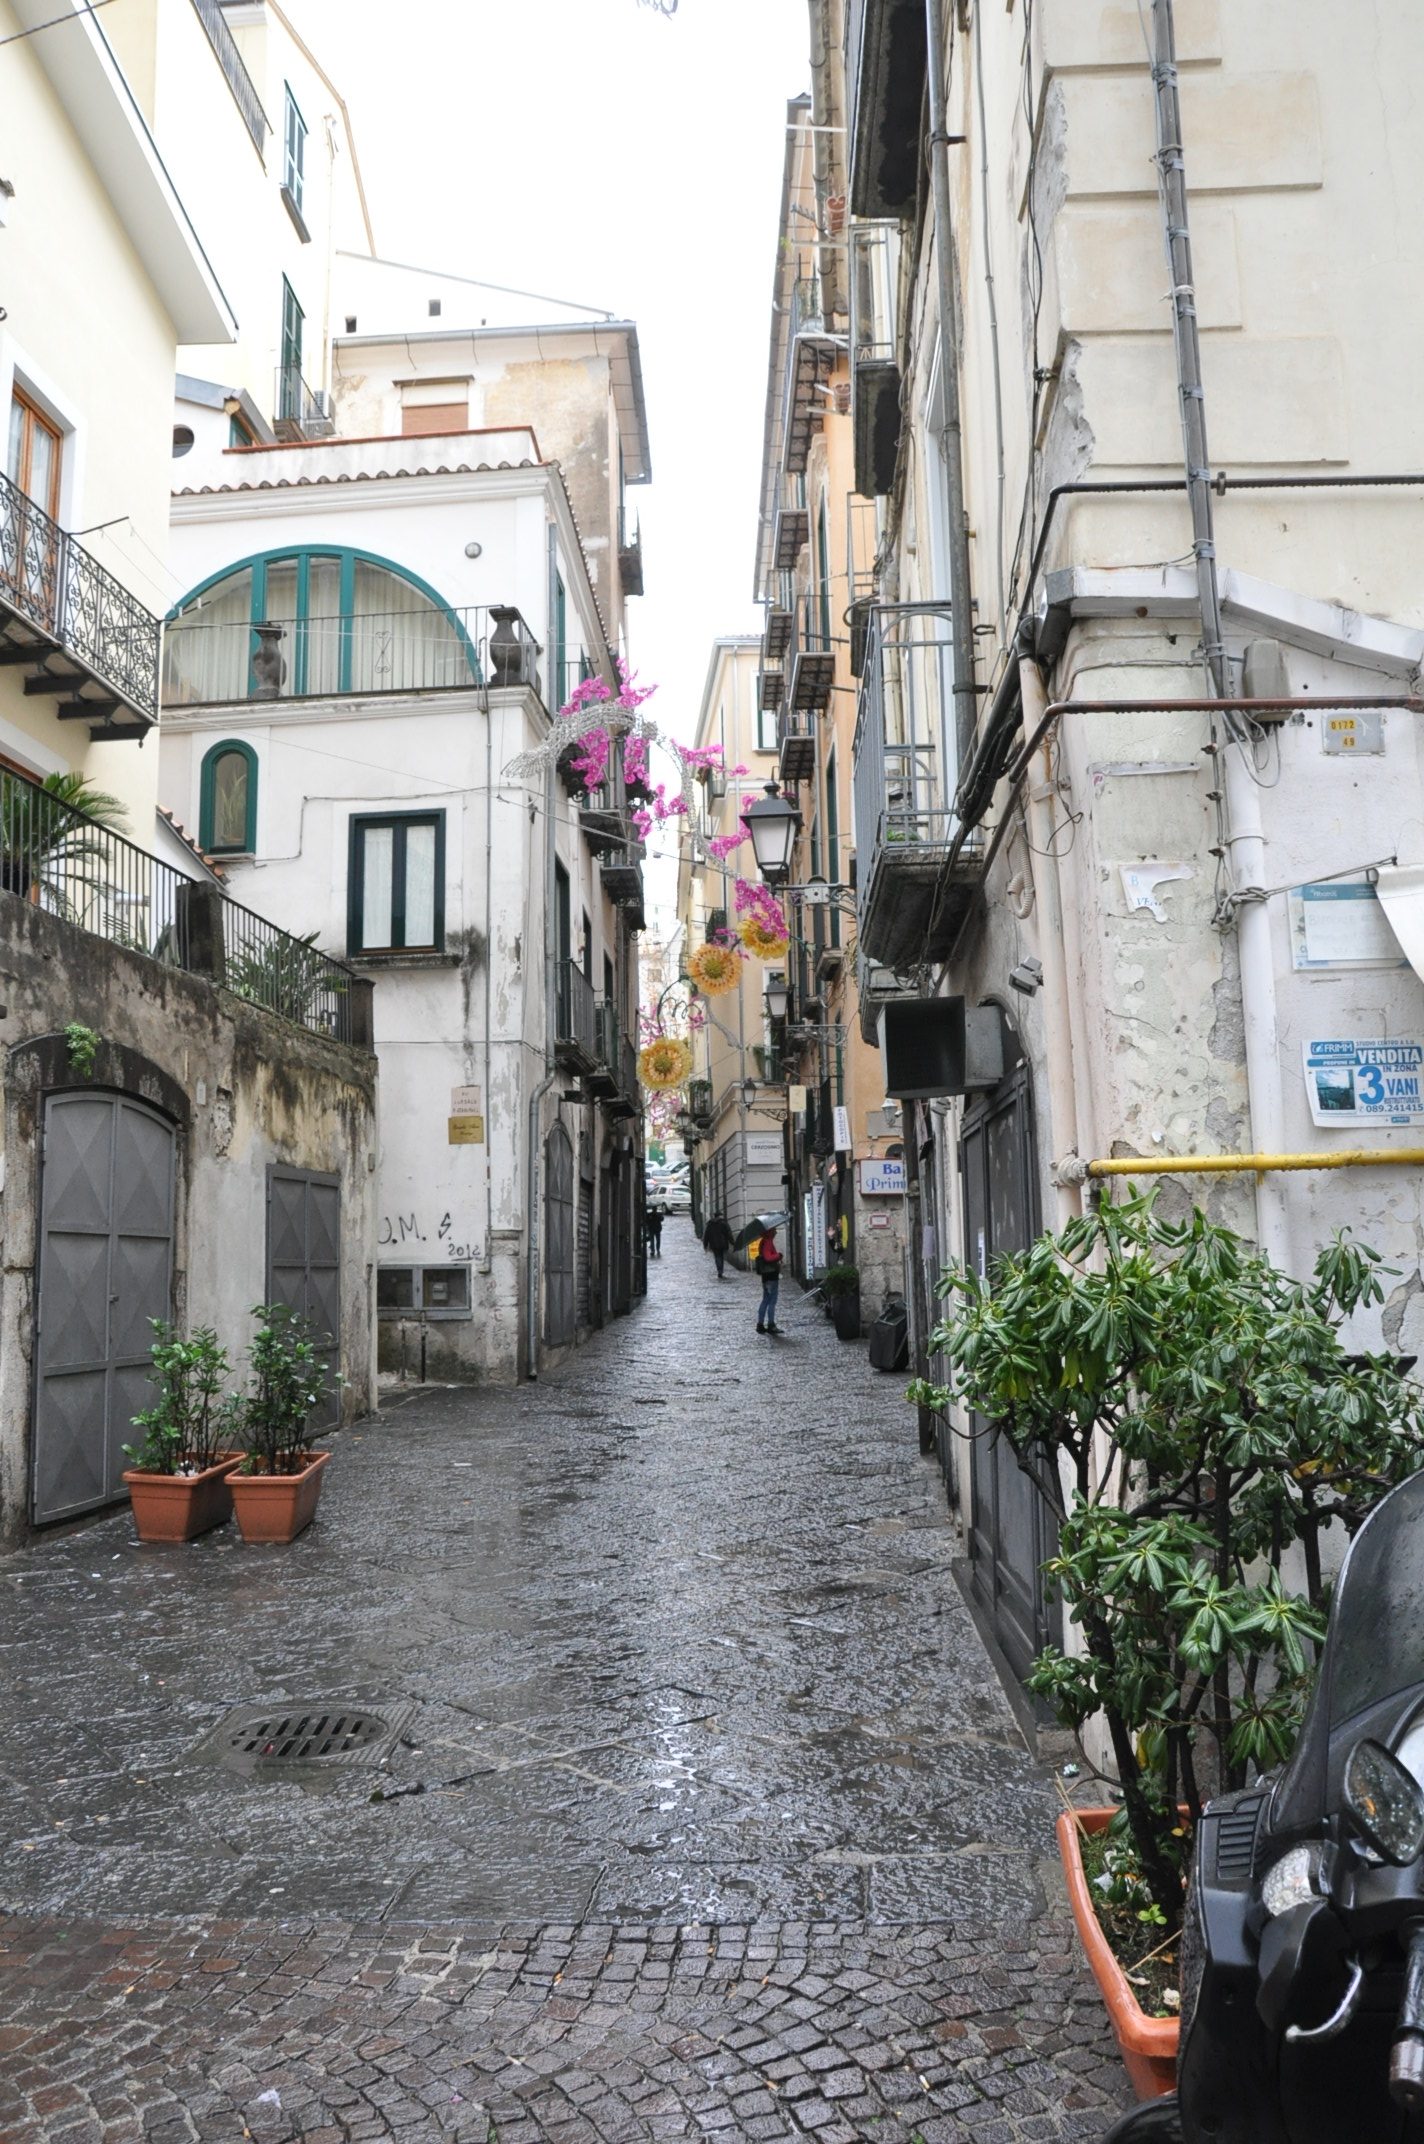 The Naples Jaunt 2: Downpour